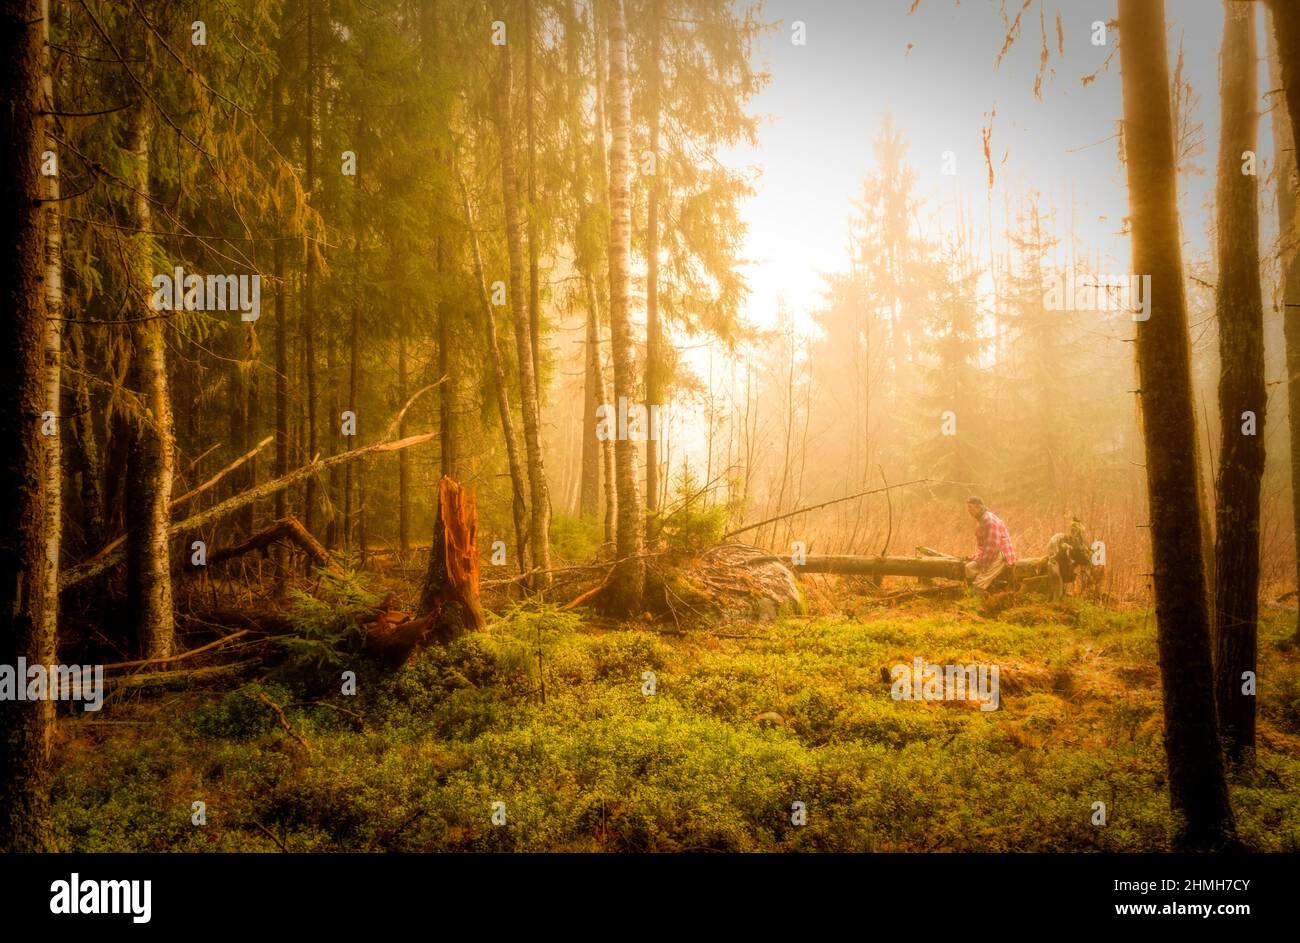 trunk albero in foresta con persona seduta su un albero e nebbia dietro Foto Stock